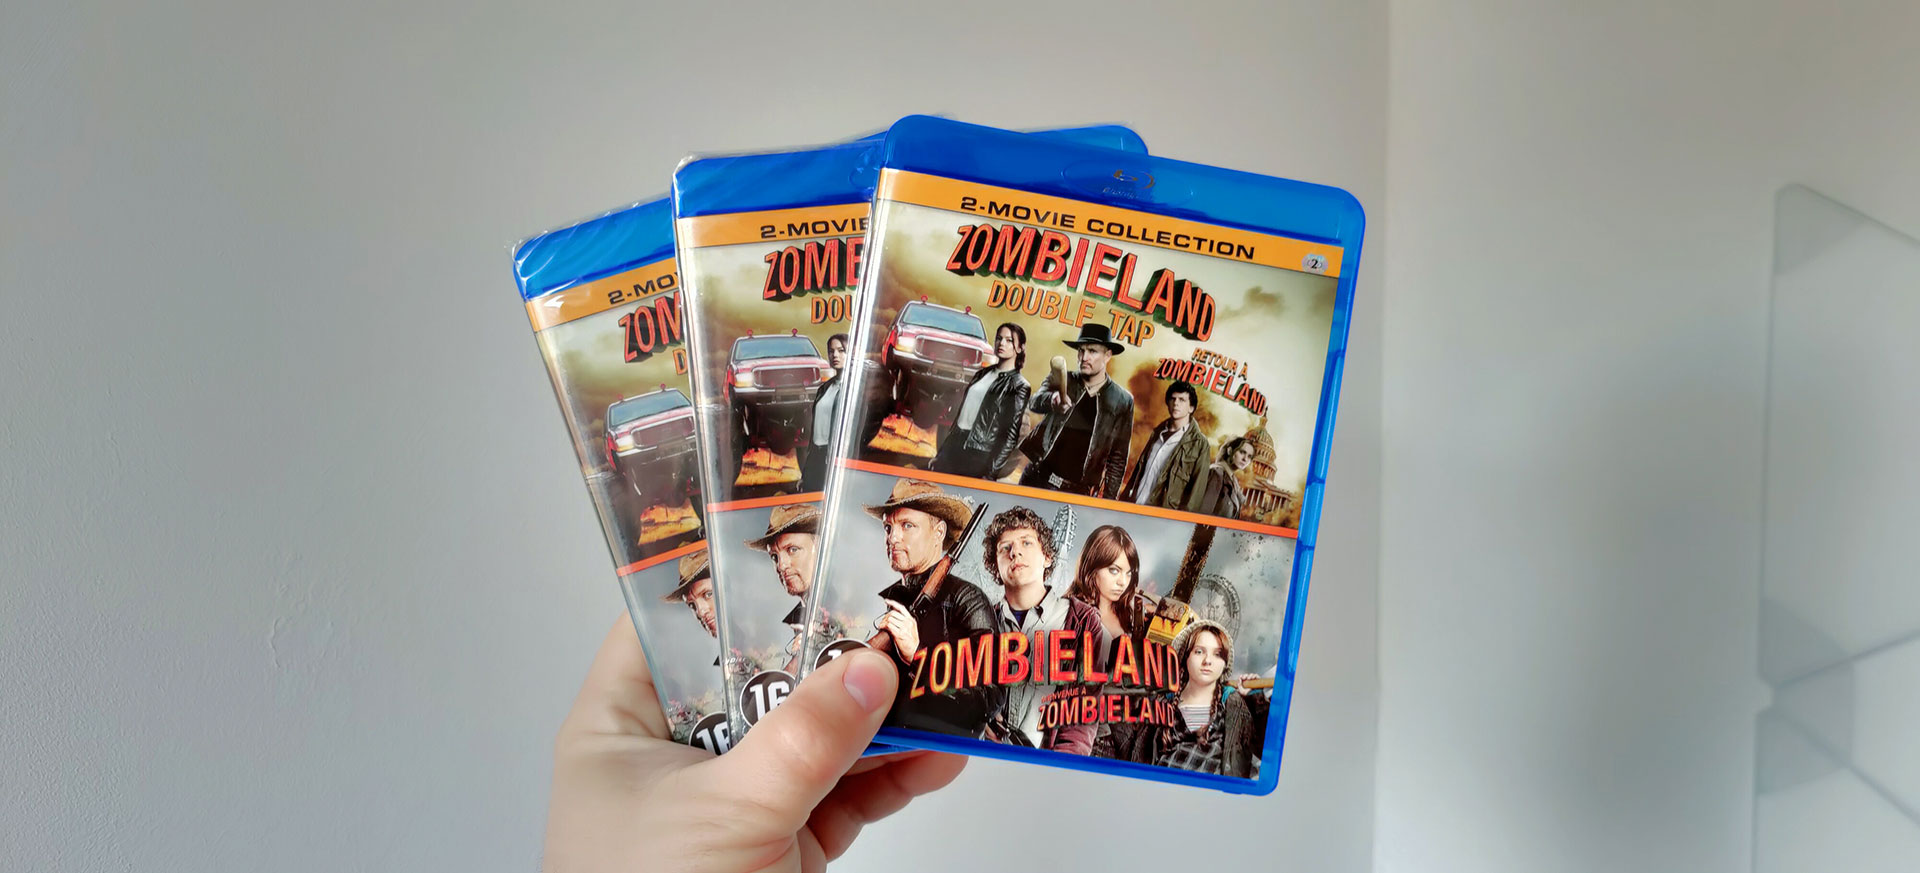 Zombieland en Zombieland Double Tap op Blu-Ray